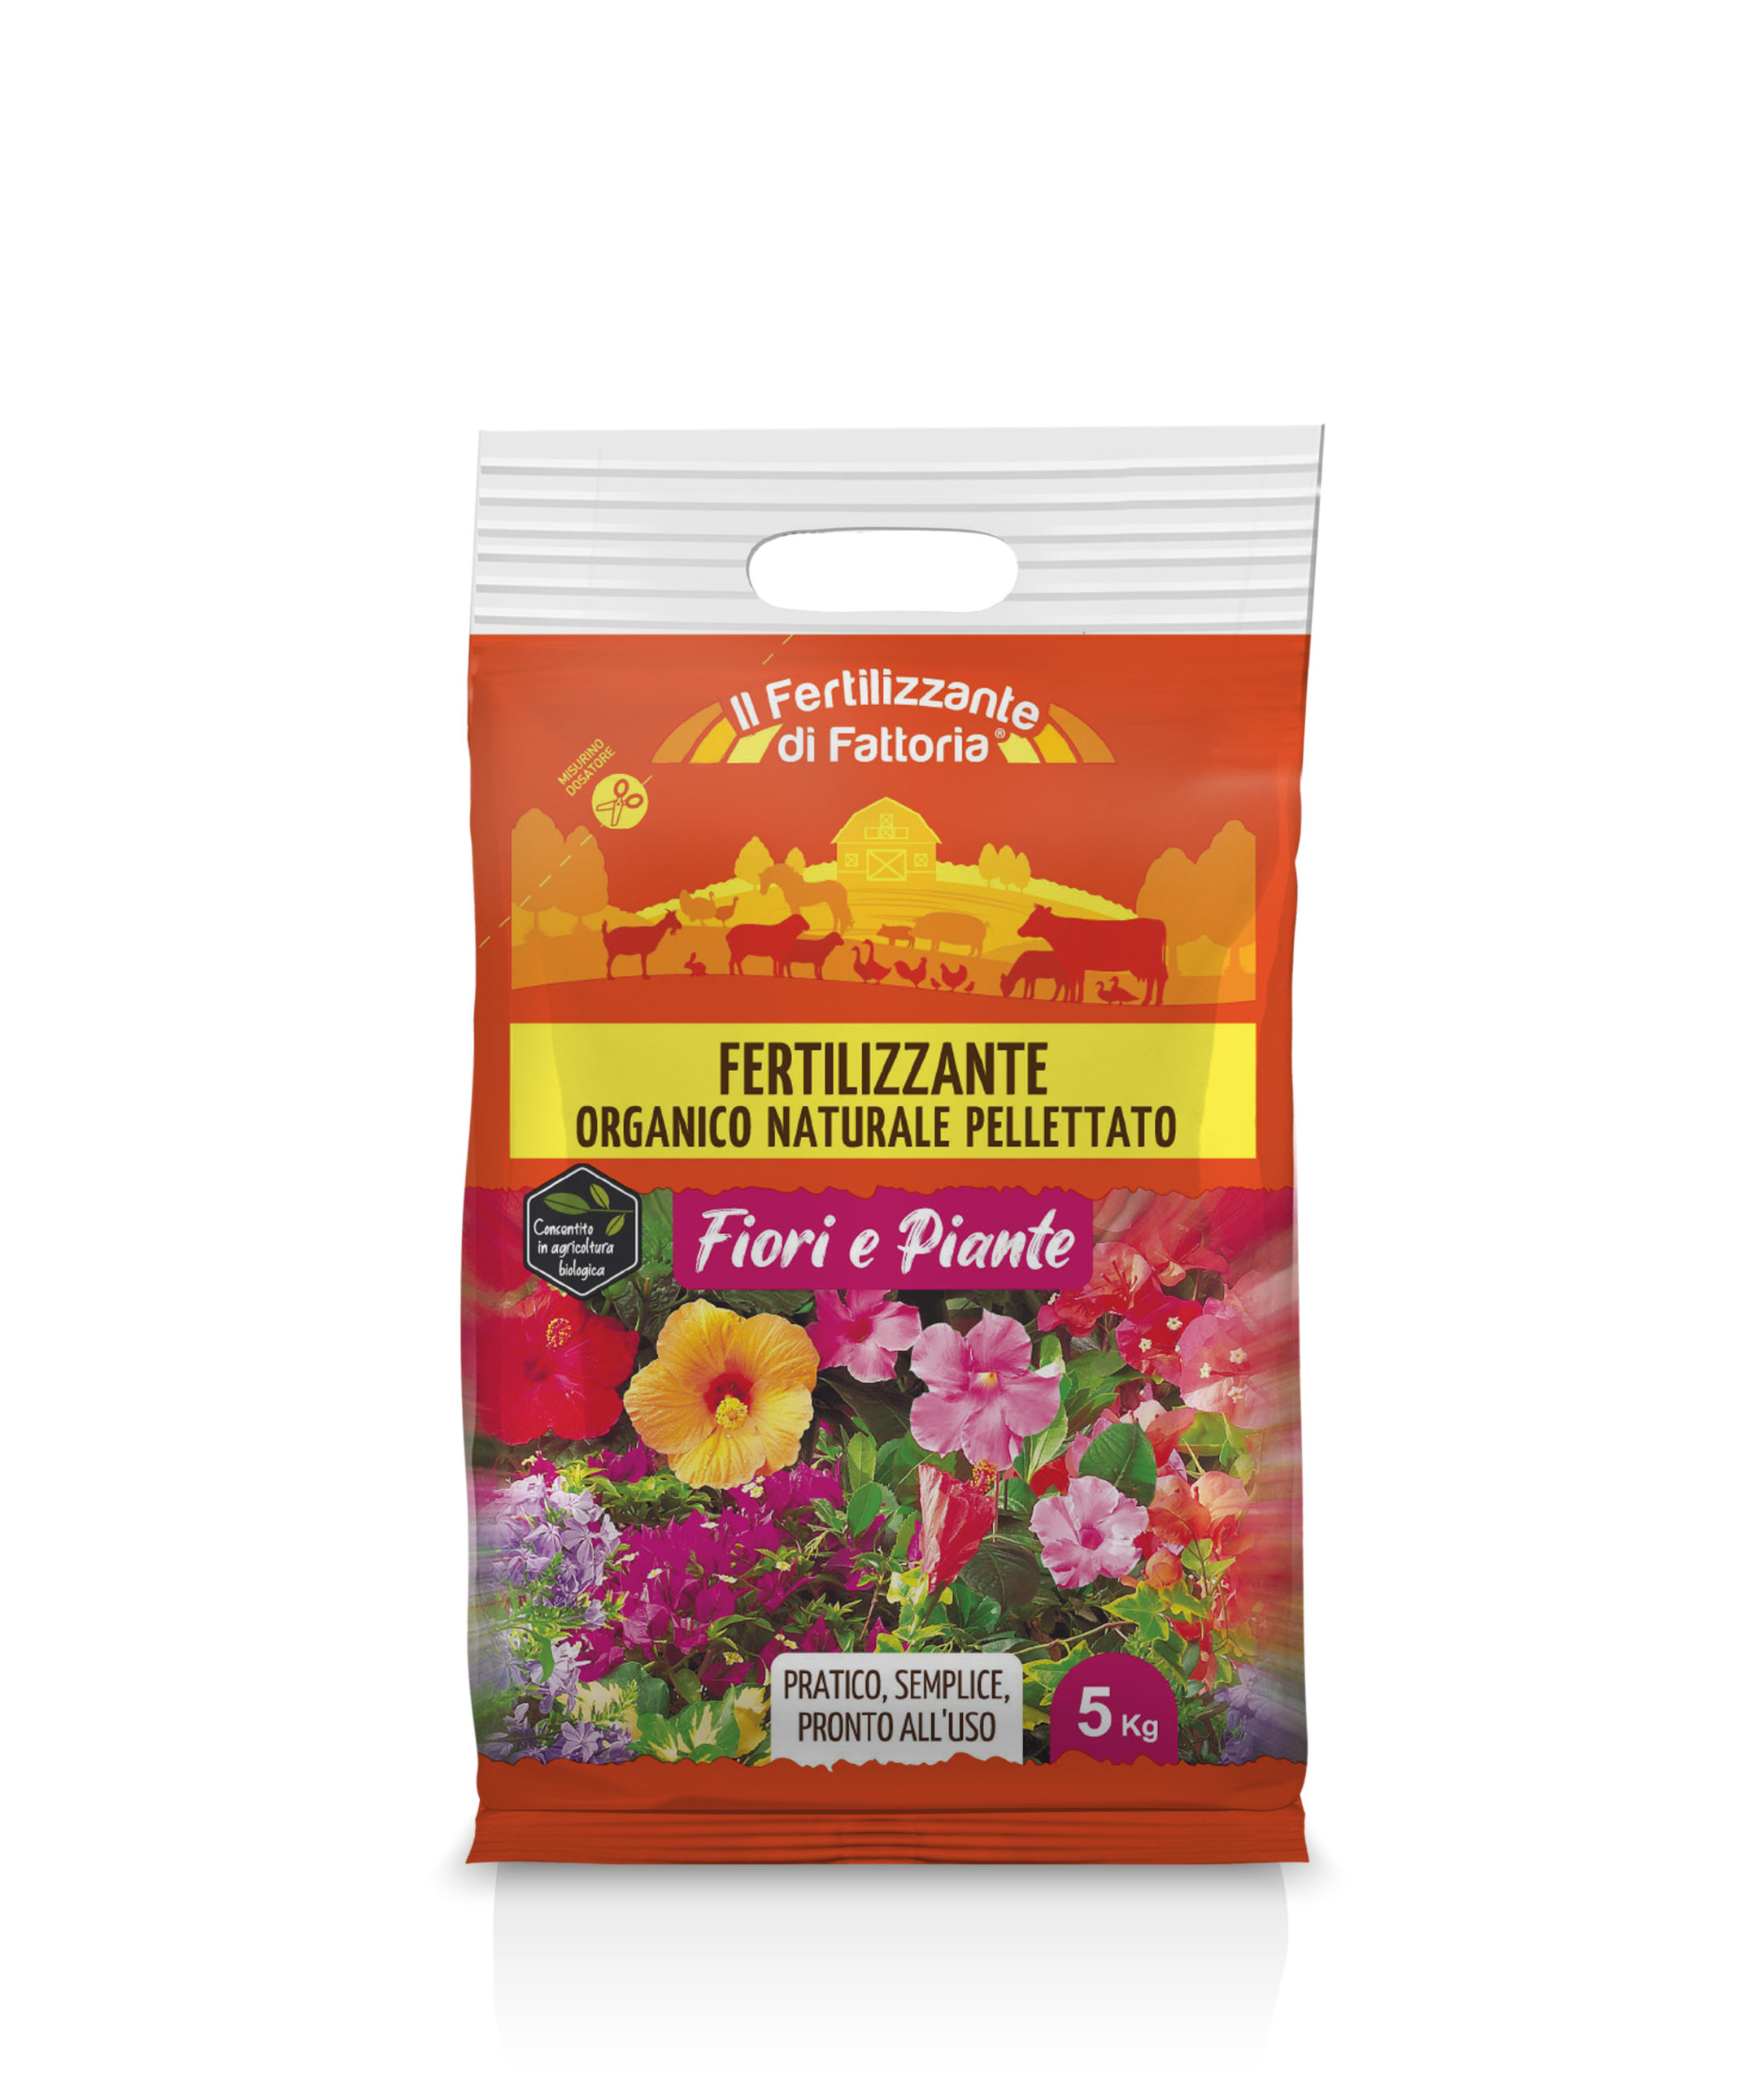 Bio Farm Fertilizer for Flowers and Plants